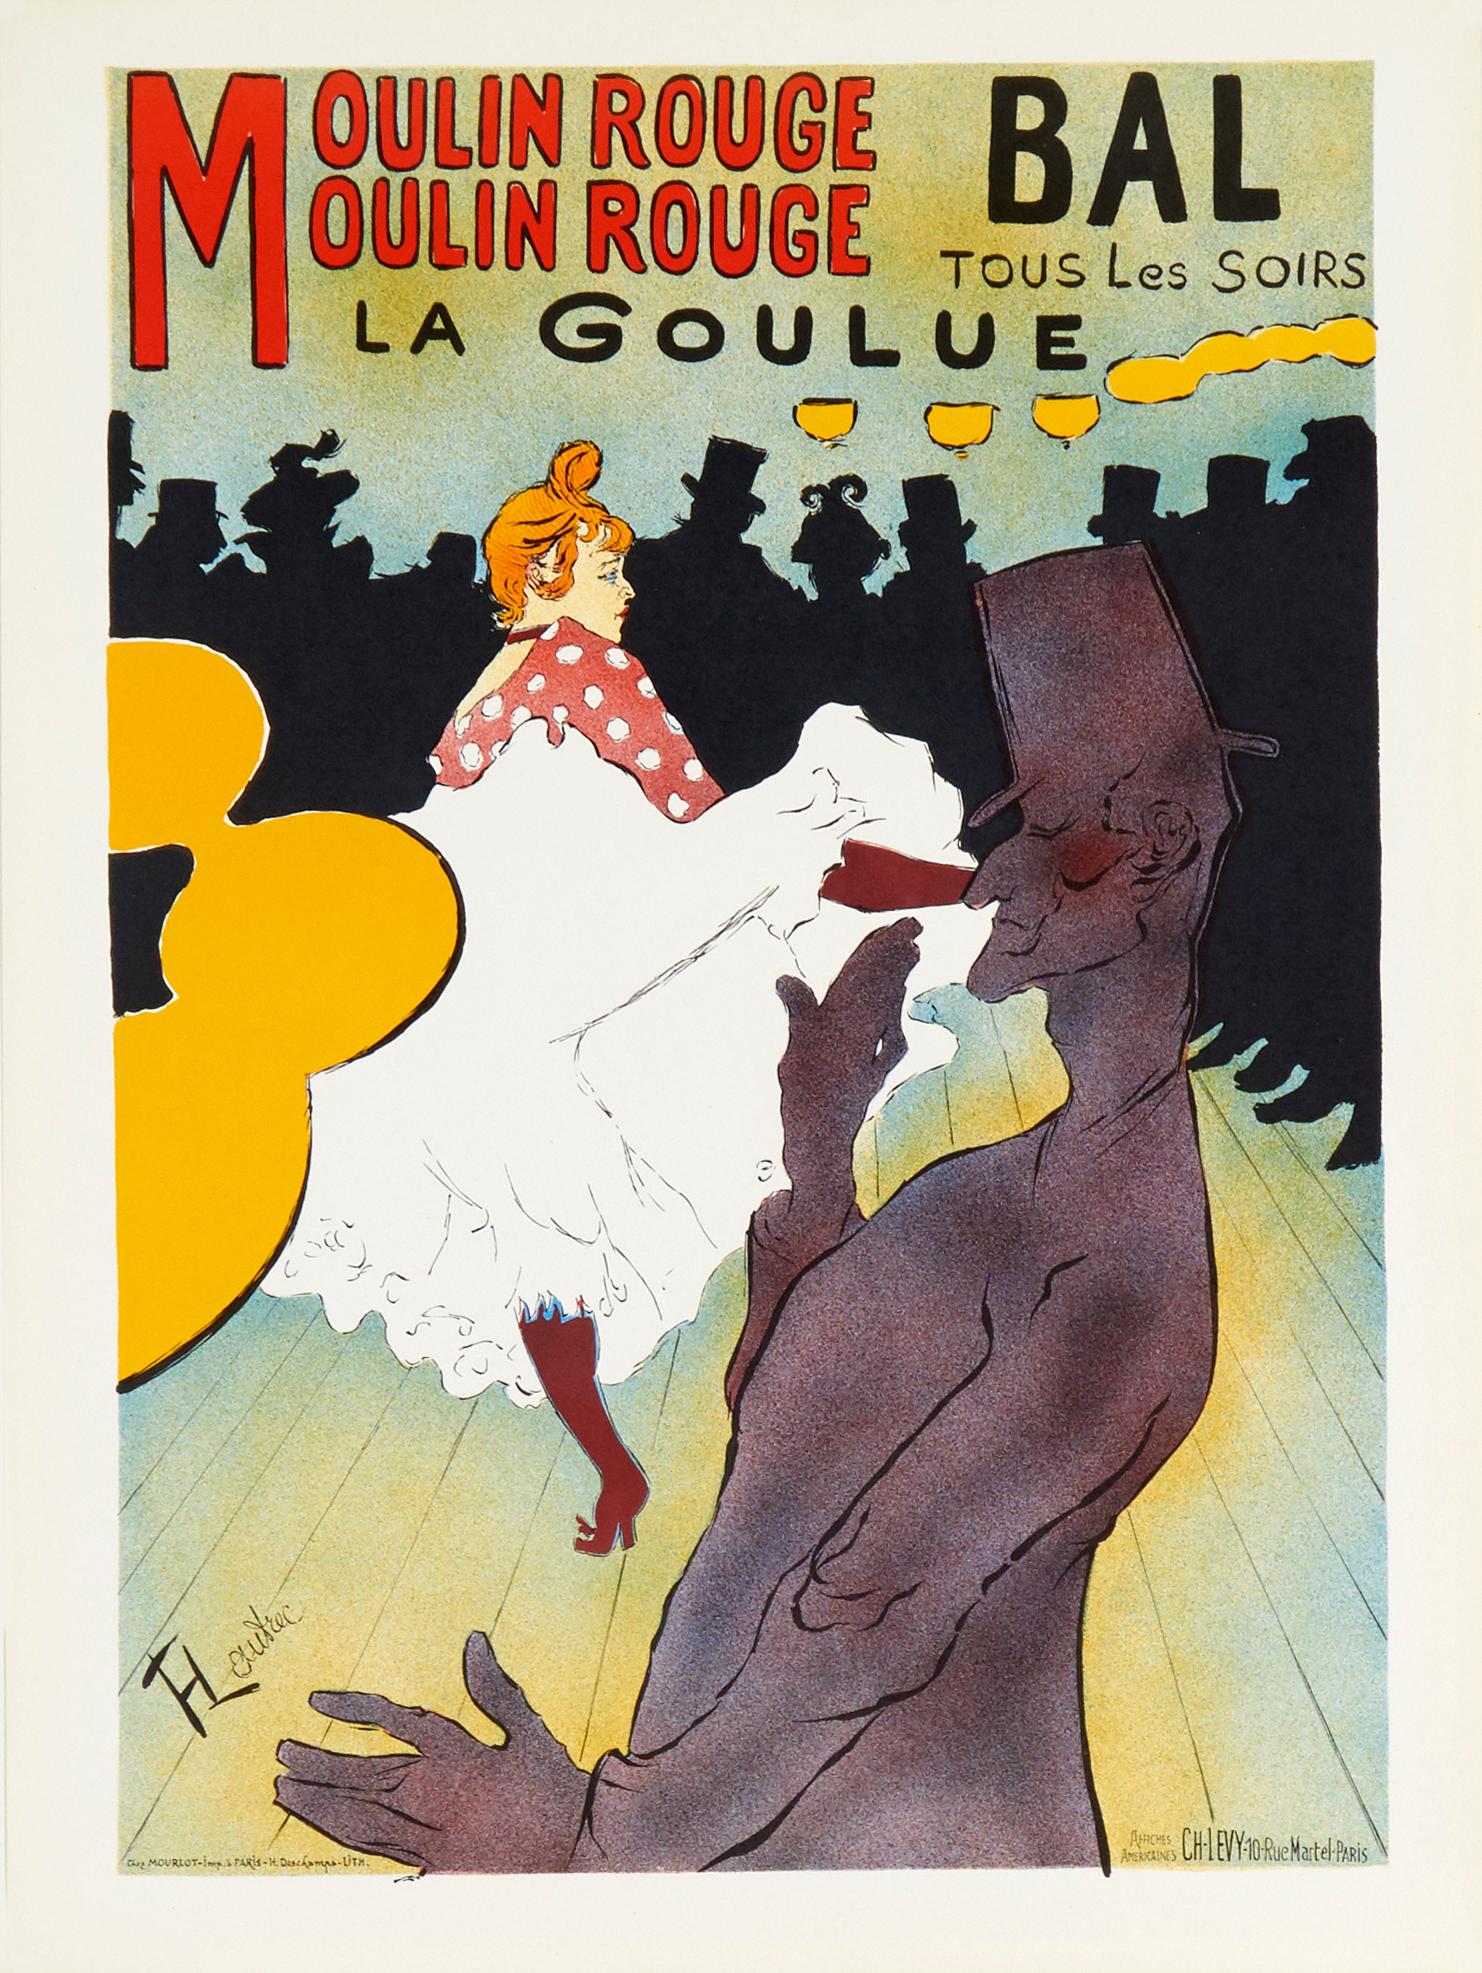 (After) Henri Toulouse Lautrec Figurative Print - Moulin Rouge, La Goulue by Henri de Toulouse-Lautrec (after) lithographic poster